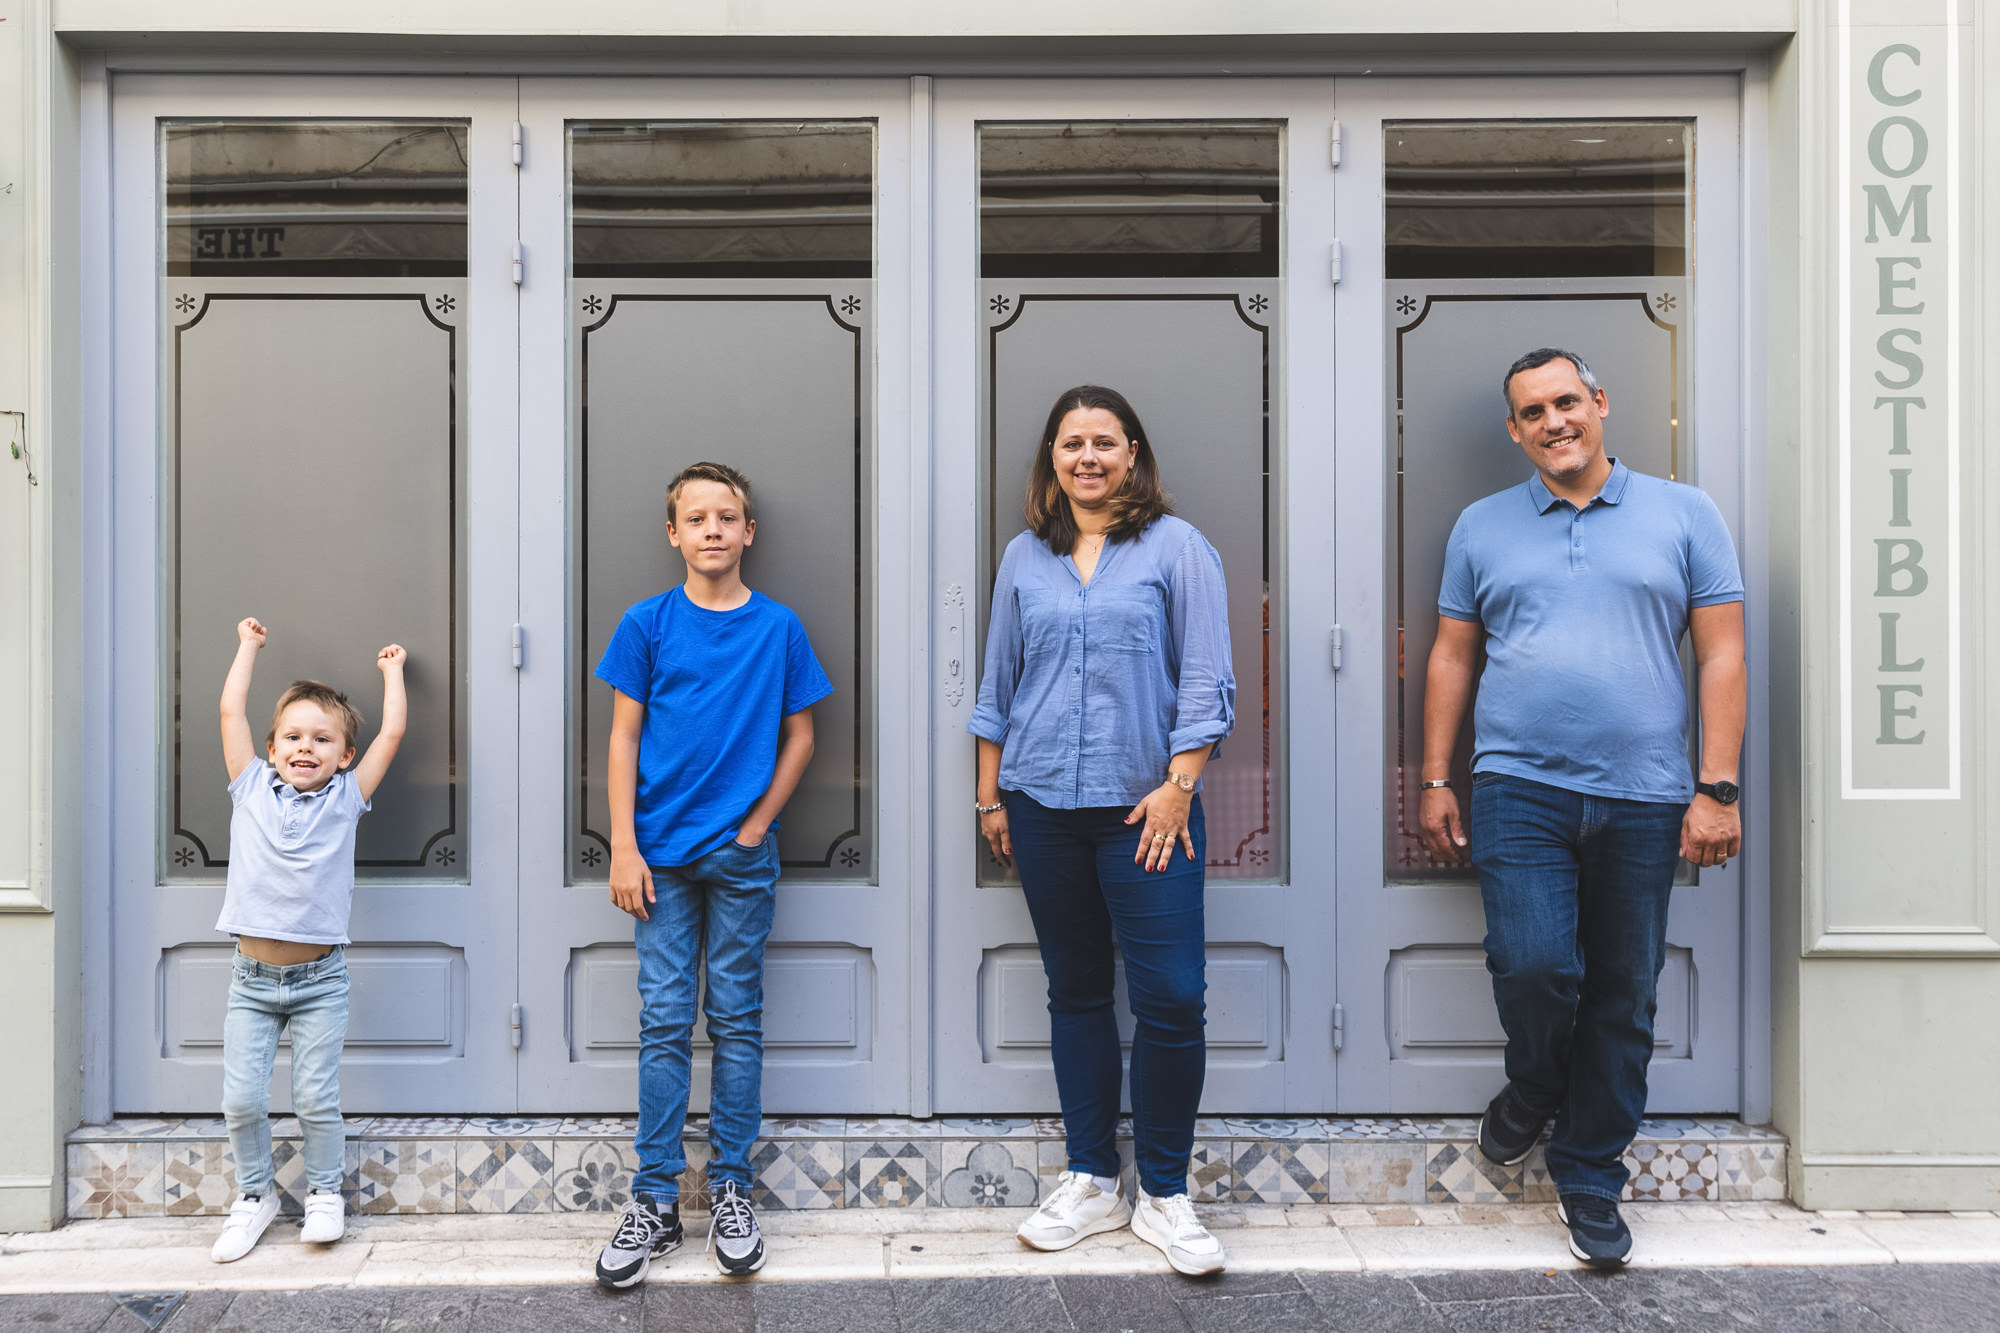 Séance photo en famille à Antibes : portrait d'une famille devant une façade d'un magasin.